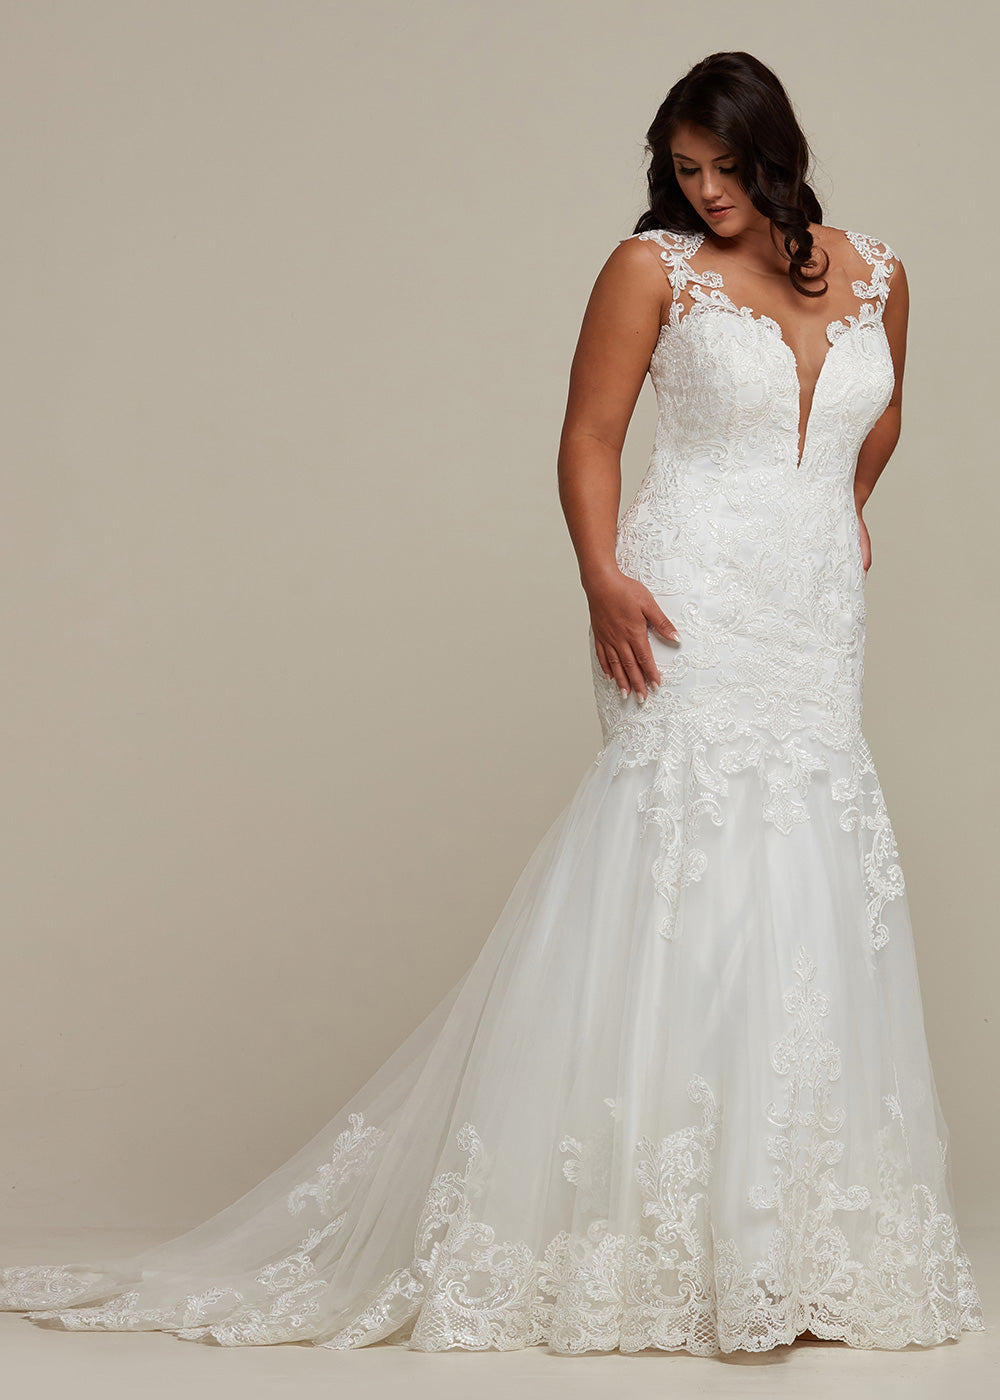 Gianna Wedding Dress – Avery Austin